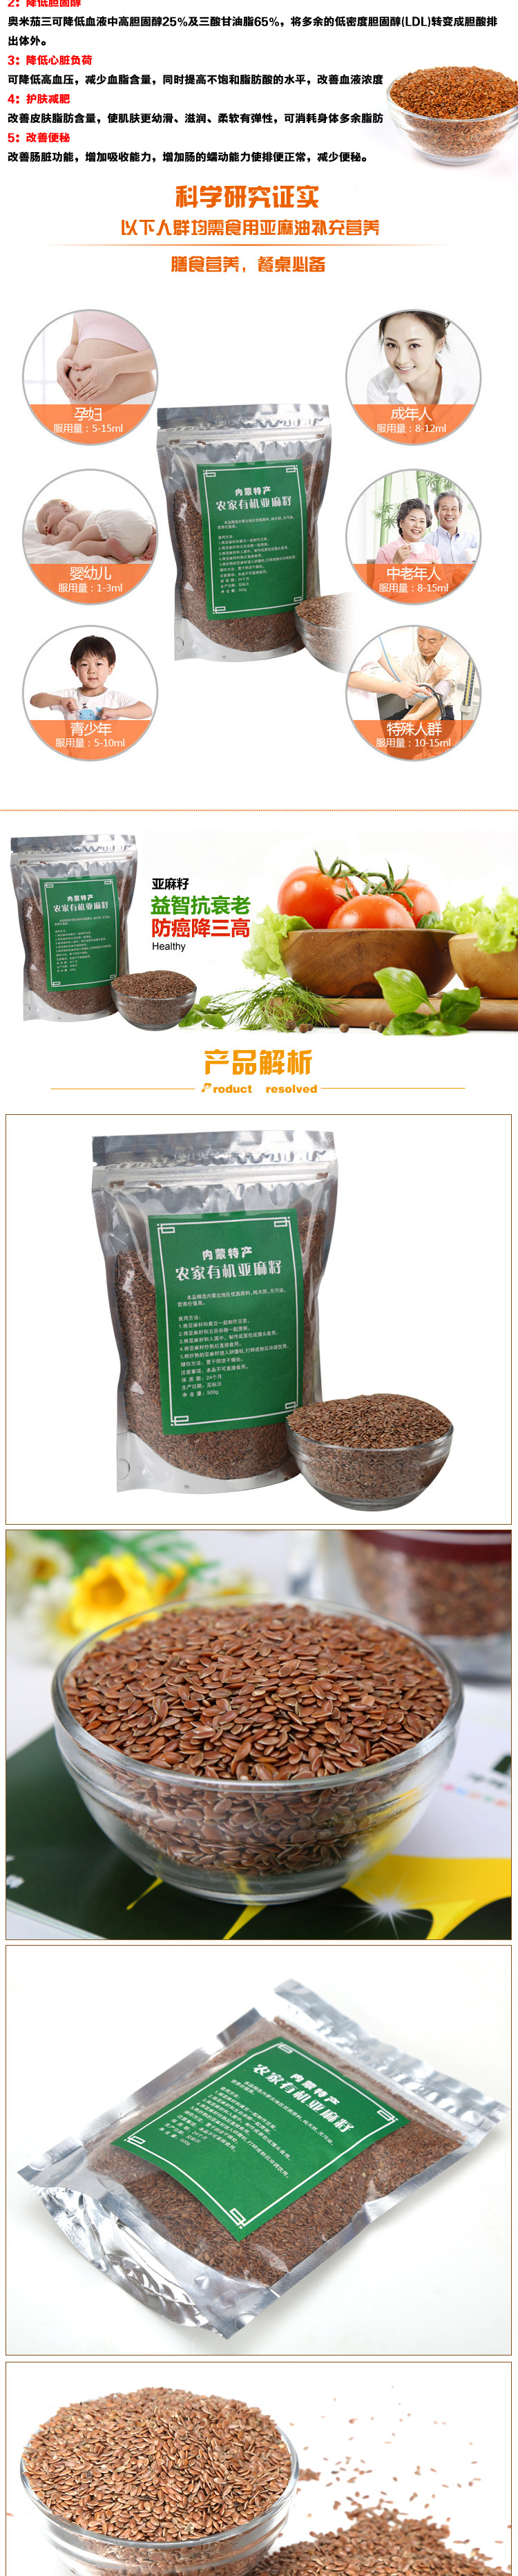 厂家直供内蒙古正宗亚麻籽 亚麻酸含量高优质高效亚麻籽 大量现货